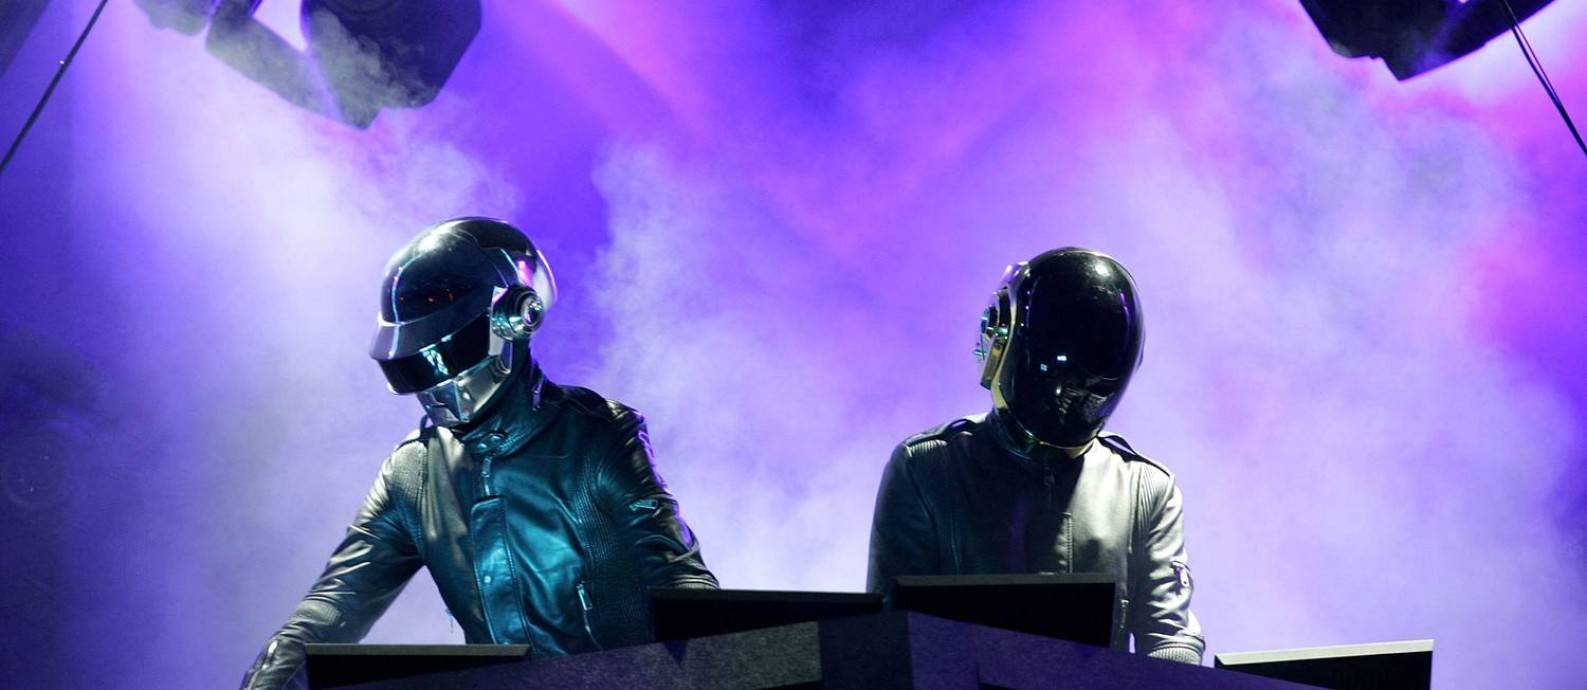 Daft Punk. 28 anos depois, a dupla retro-futurista chega ao fim